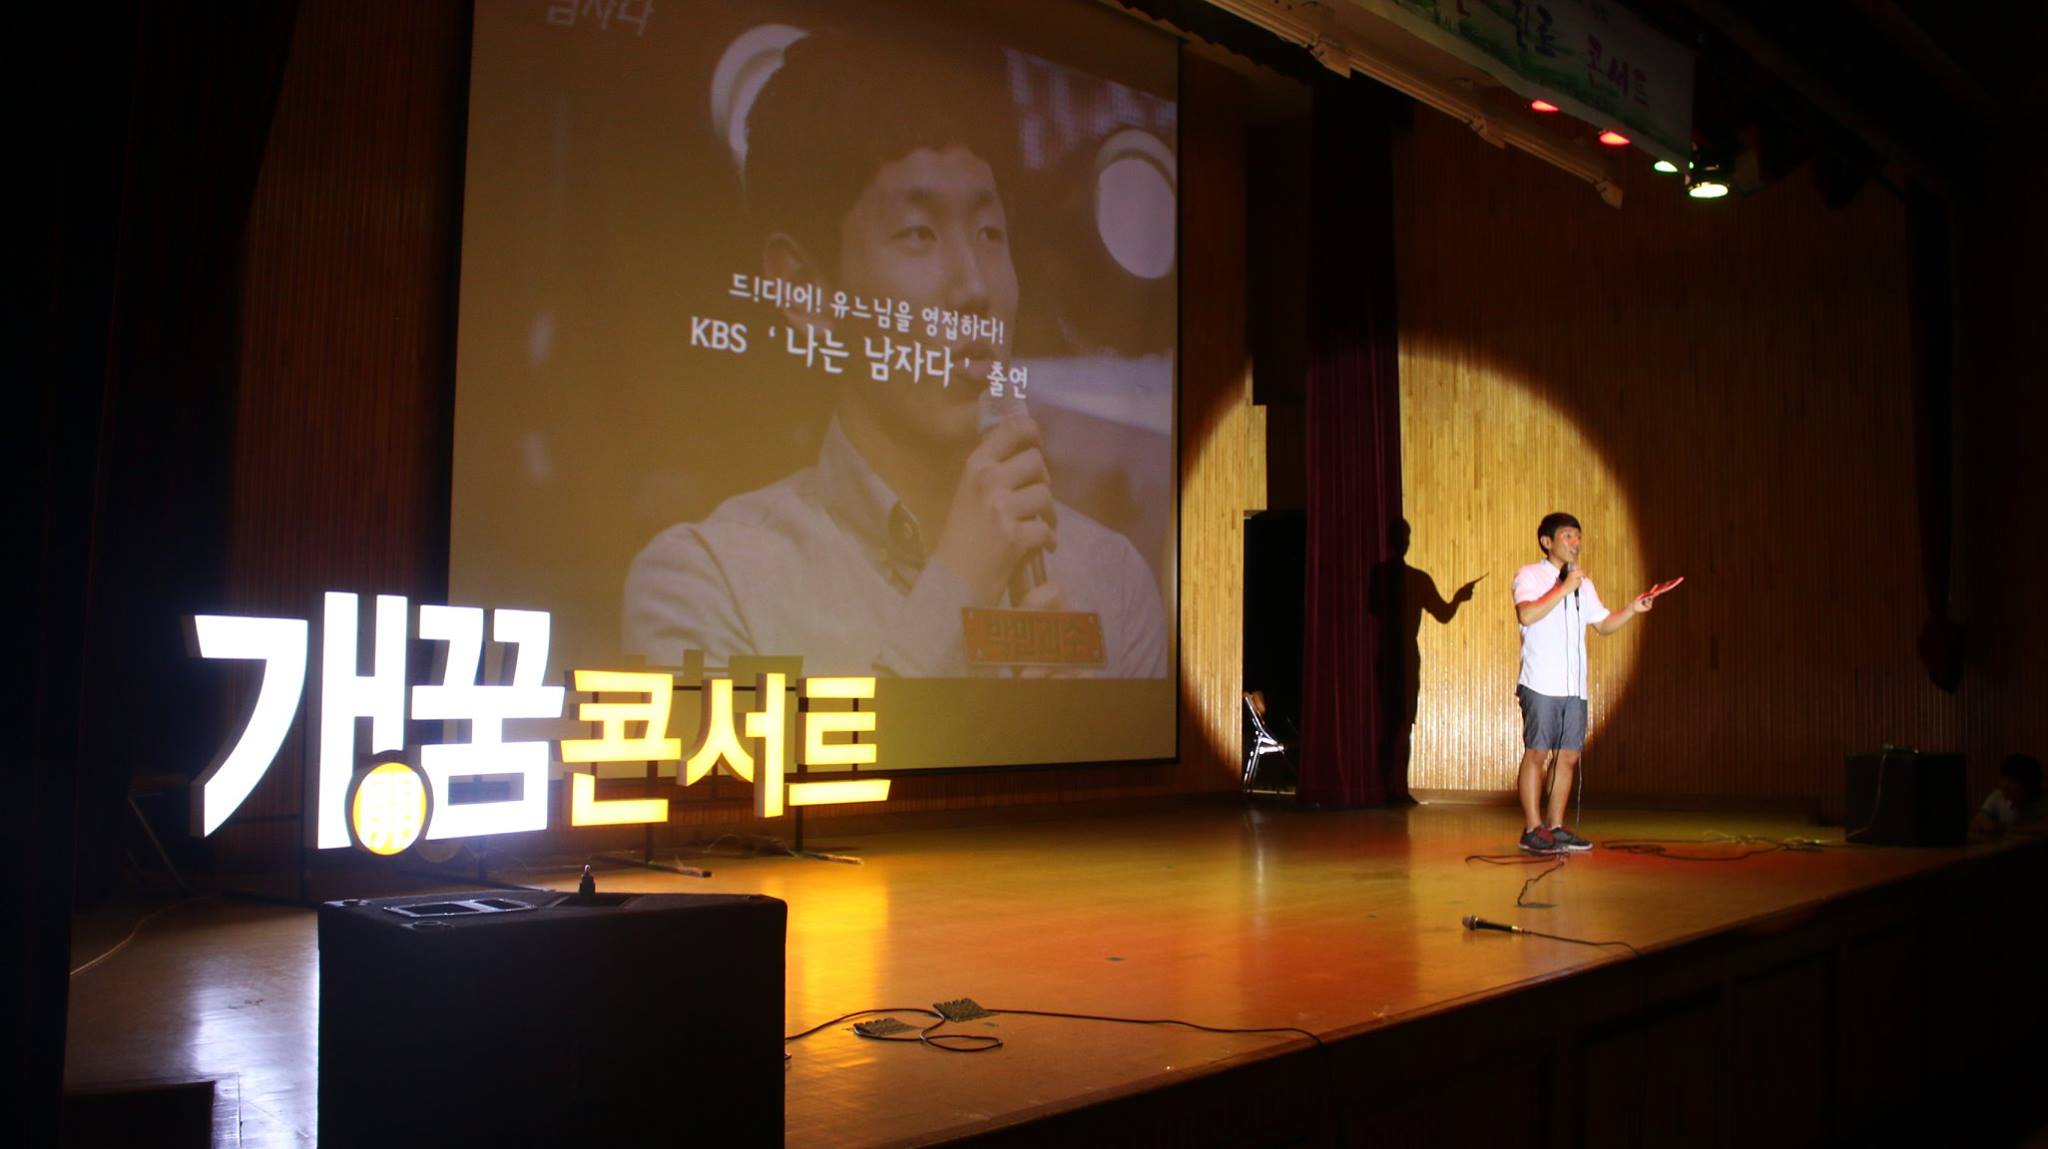 증평군립도서관, 청소년 고민해결을 위한증평군과 함께하는 개(開)꿈 콘서트’개최